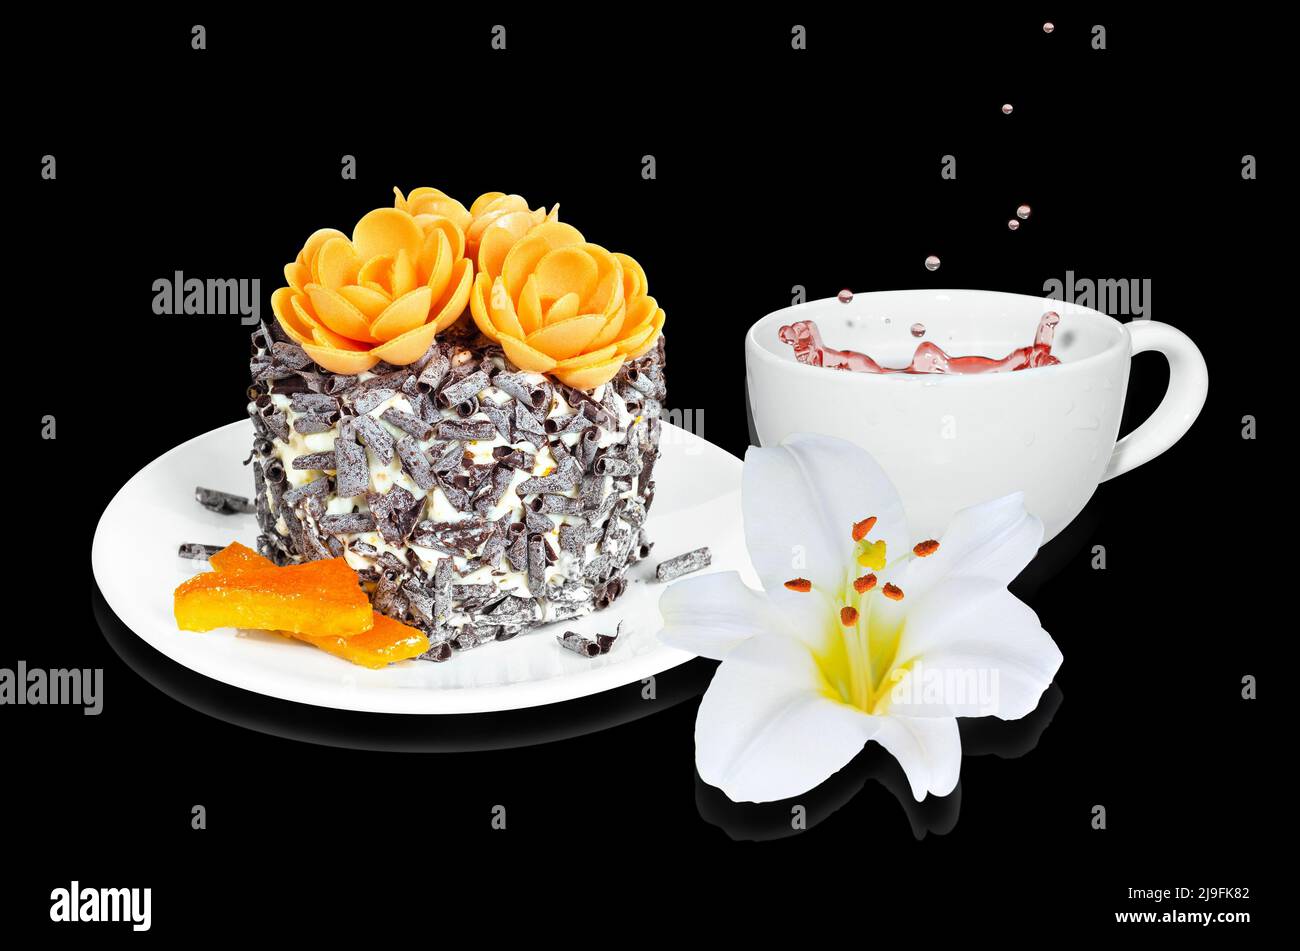 Ein kleiner Kuchen mit kandierten Orangen- und Schokoladenstückchen, einer Tasse Tee und einer Blume auf schwarzem Hintergrund. Selektiver Fokus Stockfoto